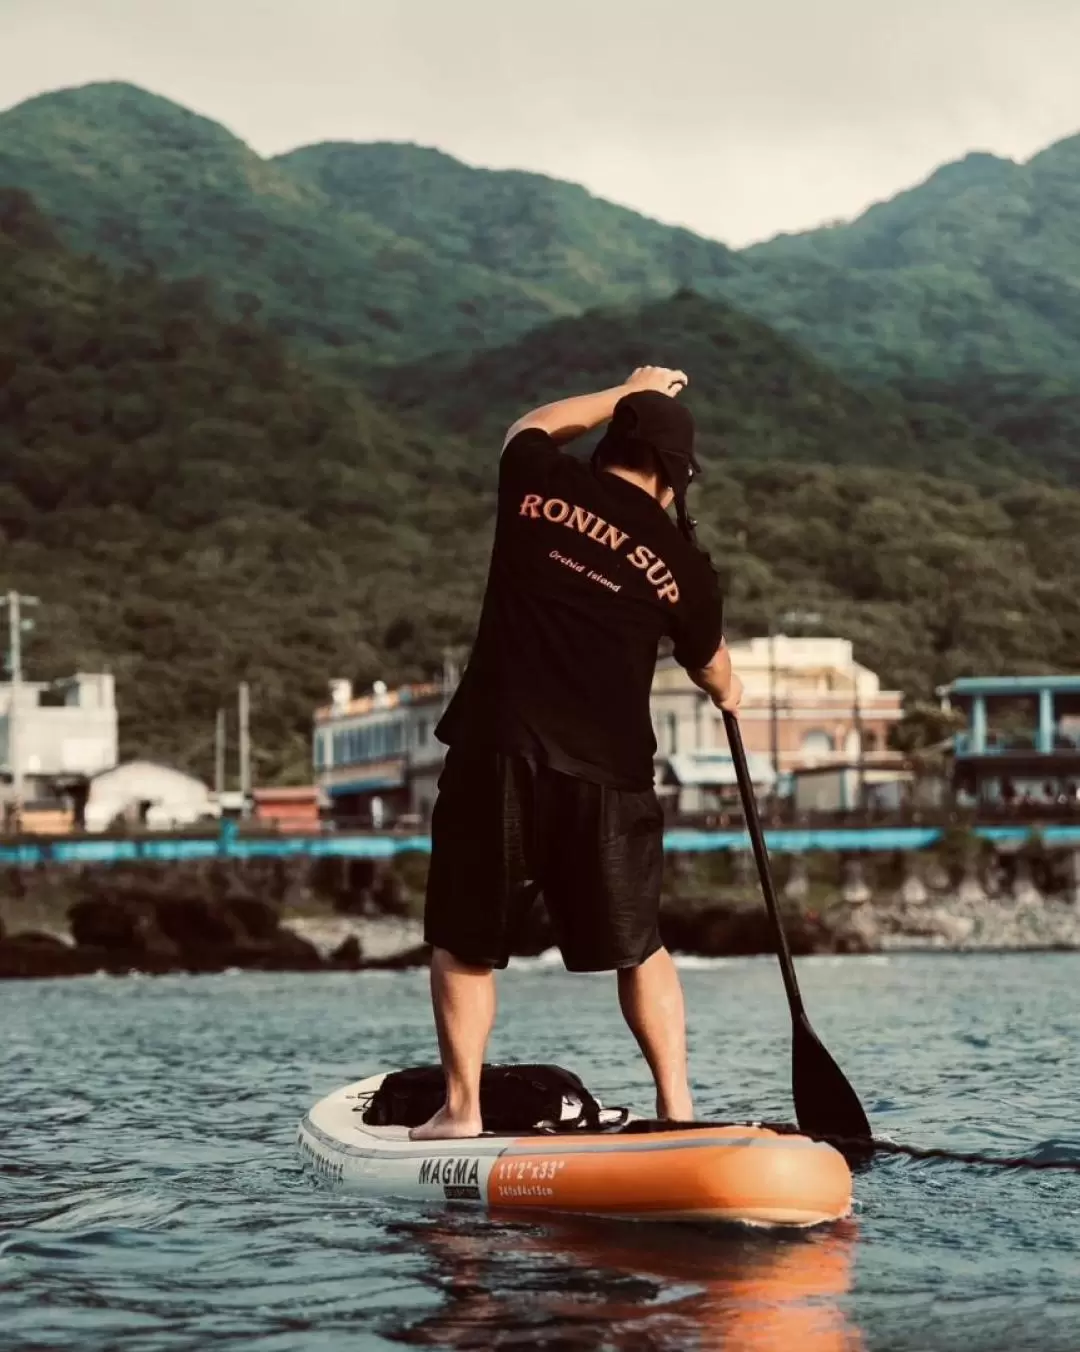 台東蘭嶼: SUP立槳與海上跑版體驗 - 日出・夕陽・Gopro攝影